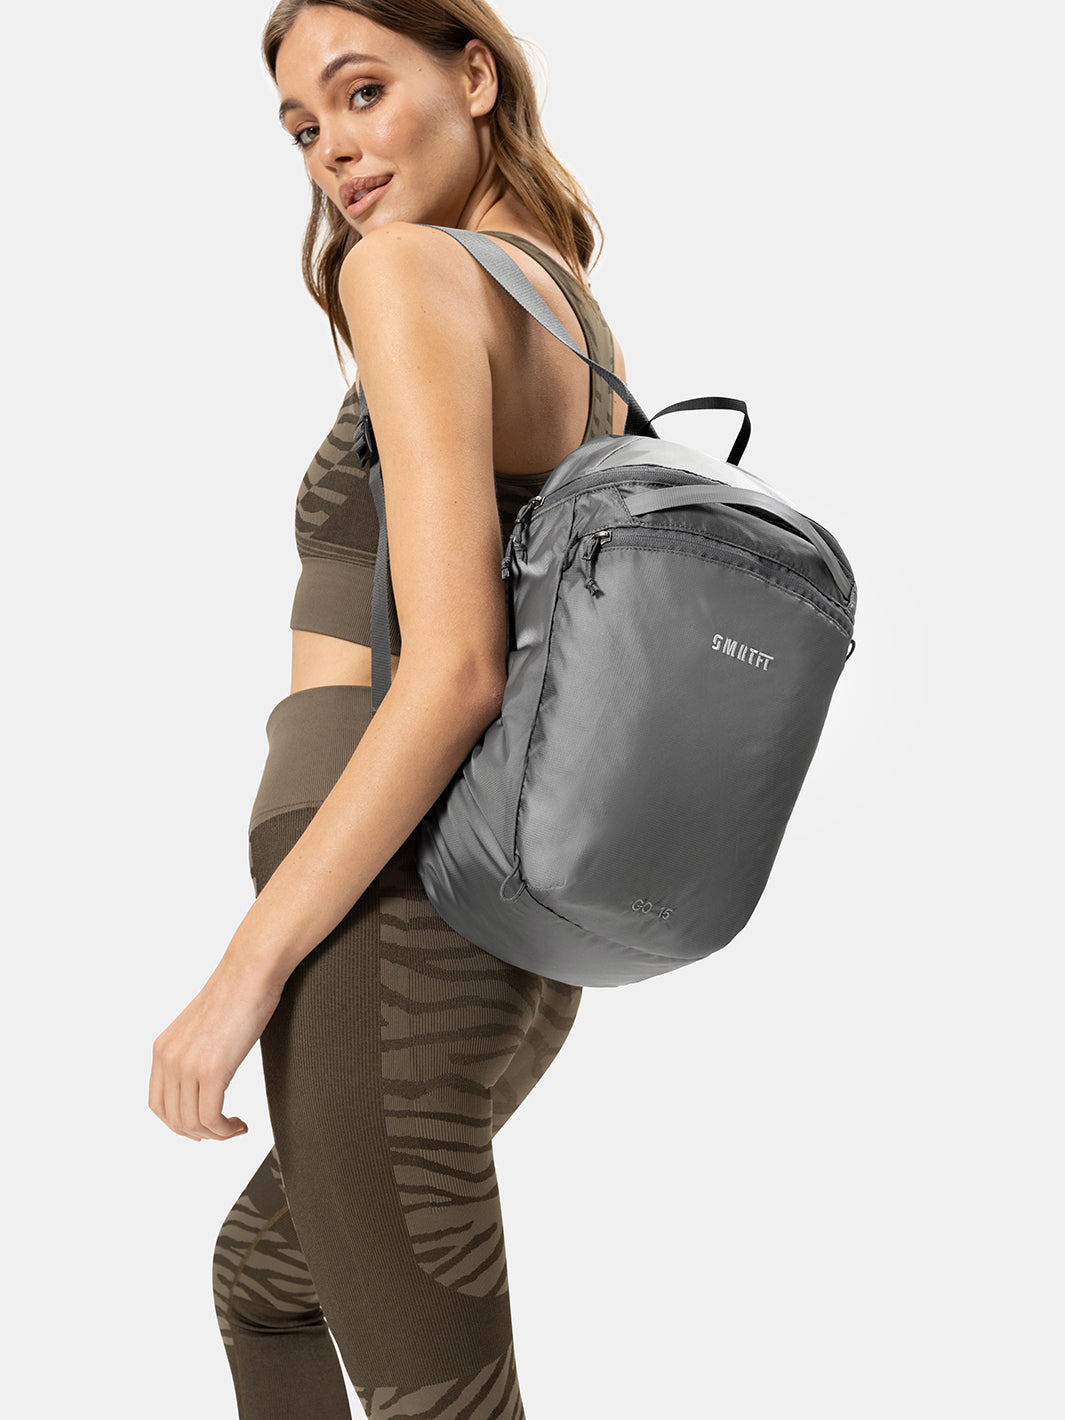 Gray Backpack For Women | Gray Backpacks